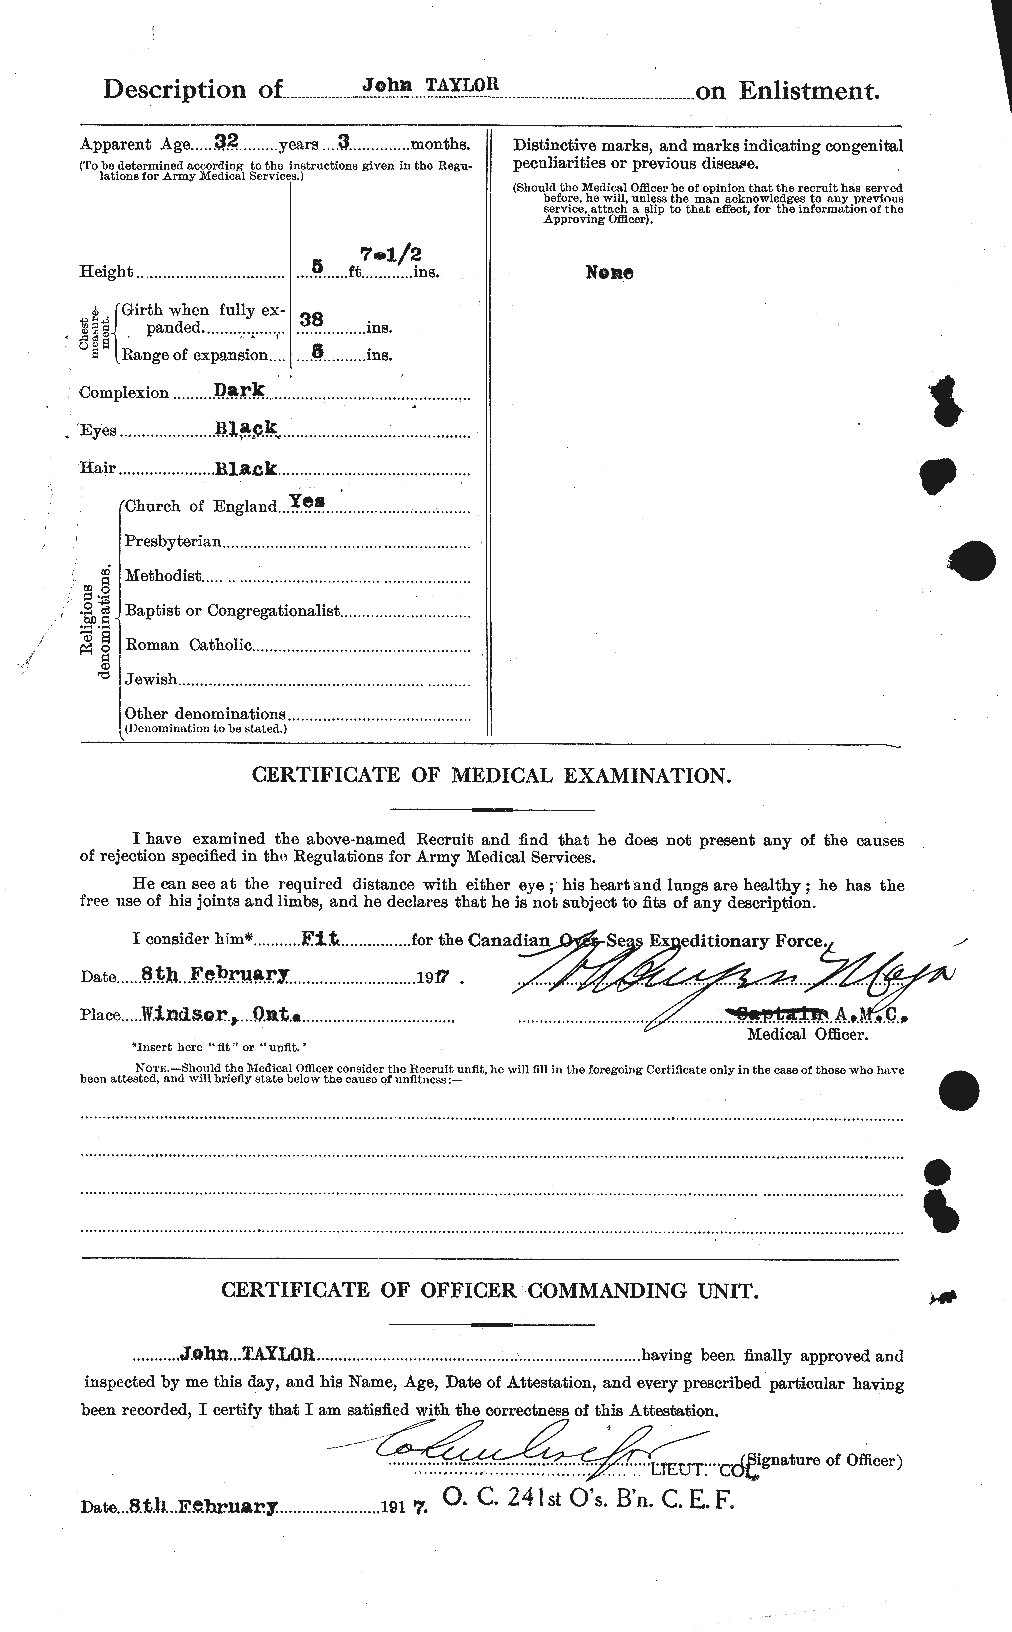 Dossiers du Personnel de la Première Guerre mondiale - CEC 626974b